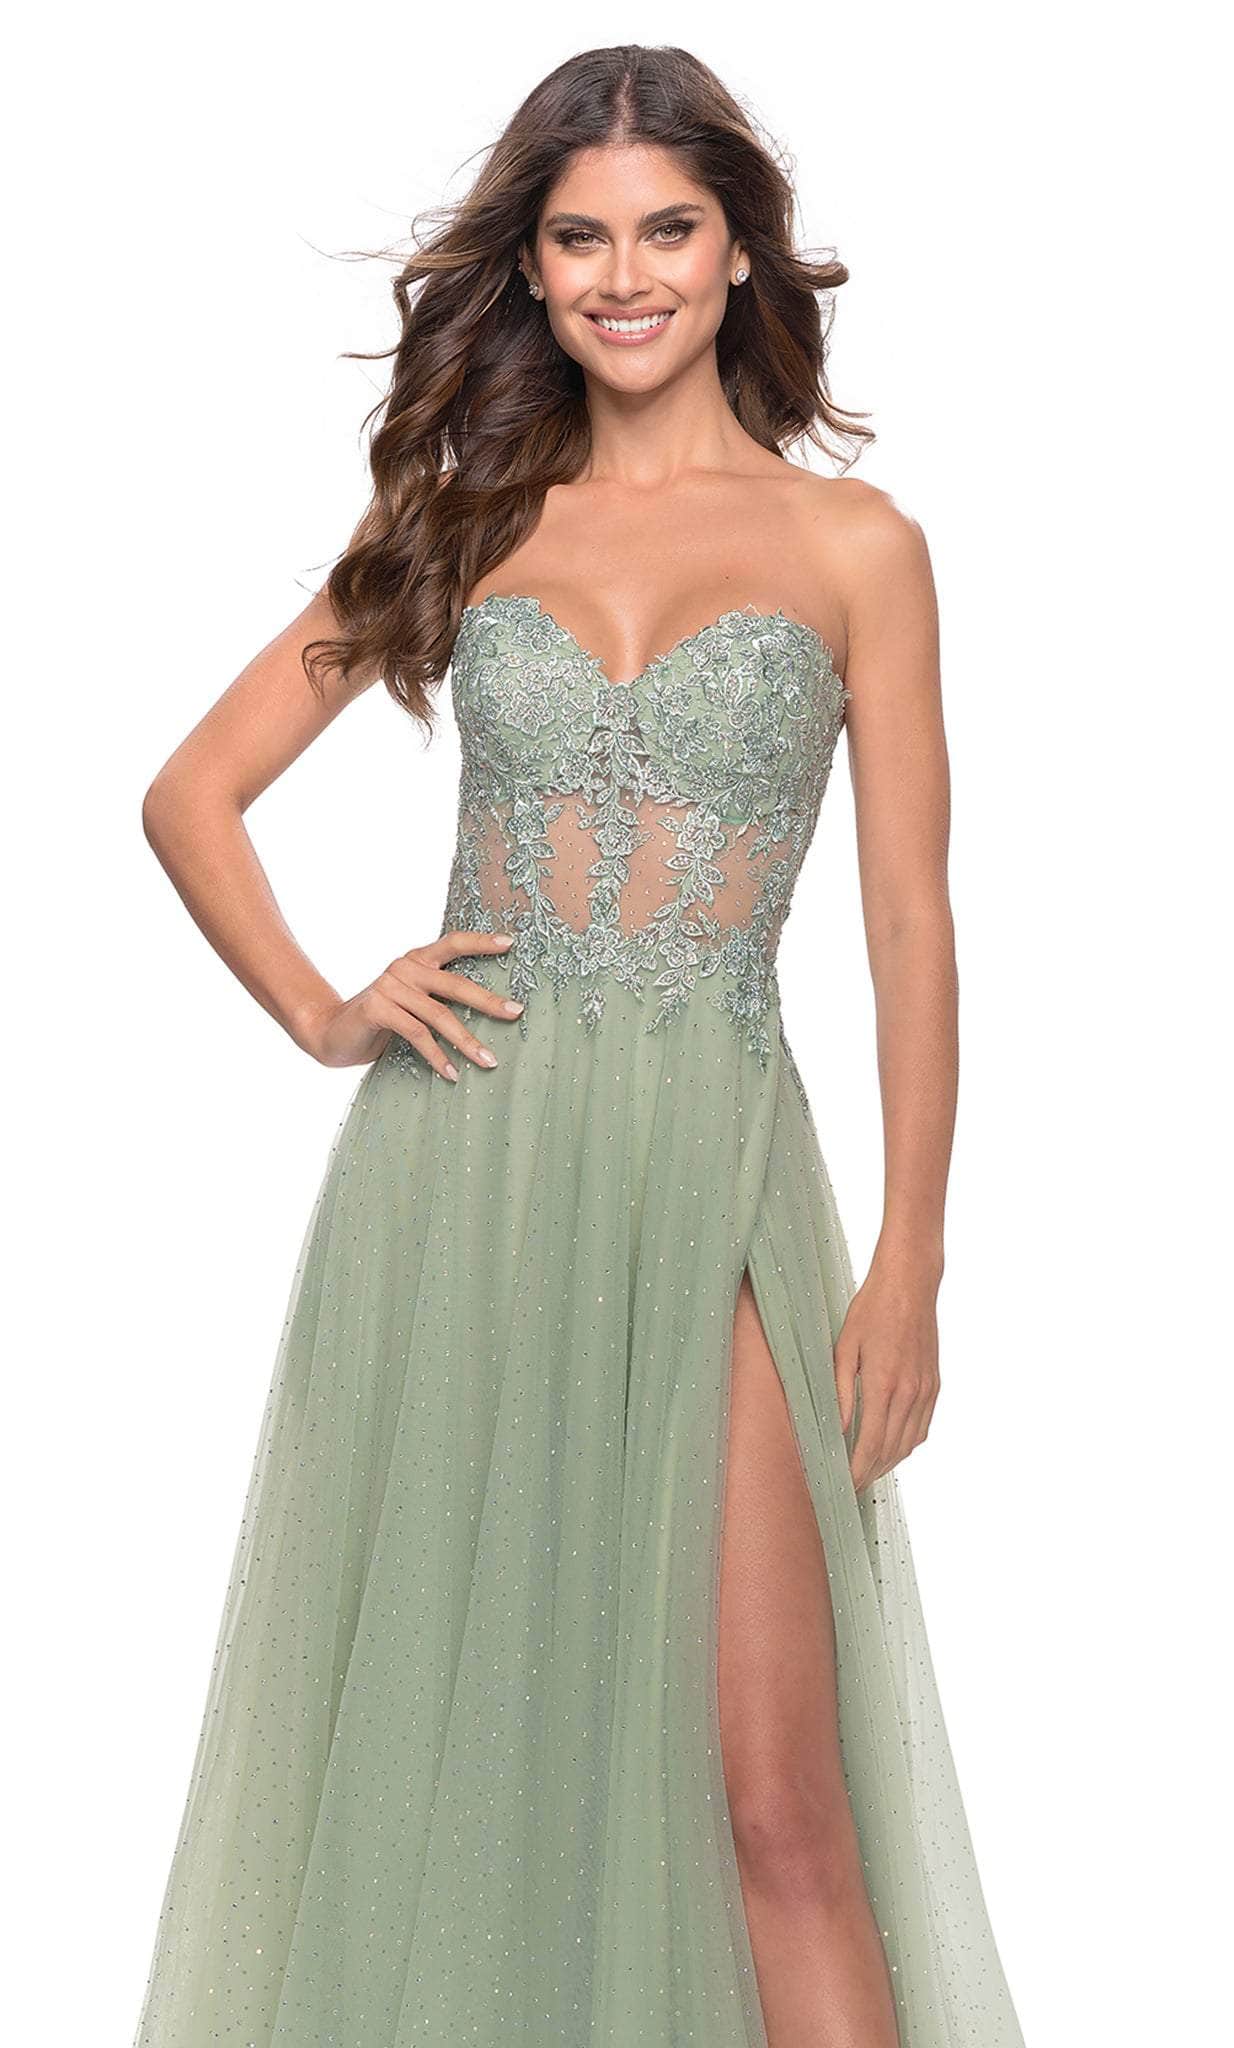 La Femme 31367 - A-Line Dress